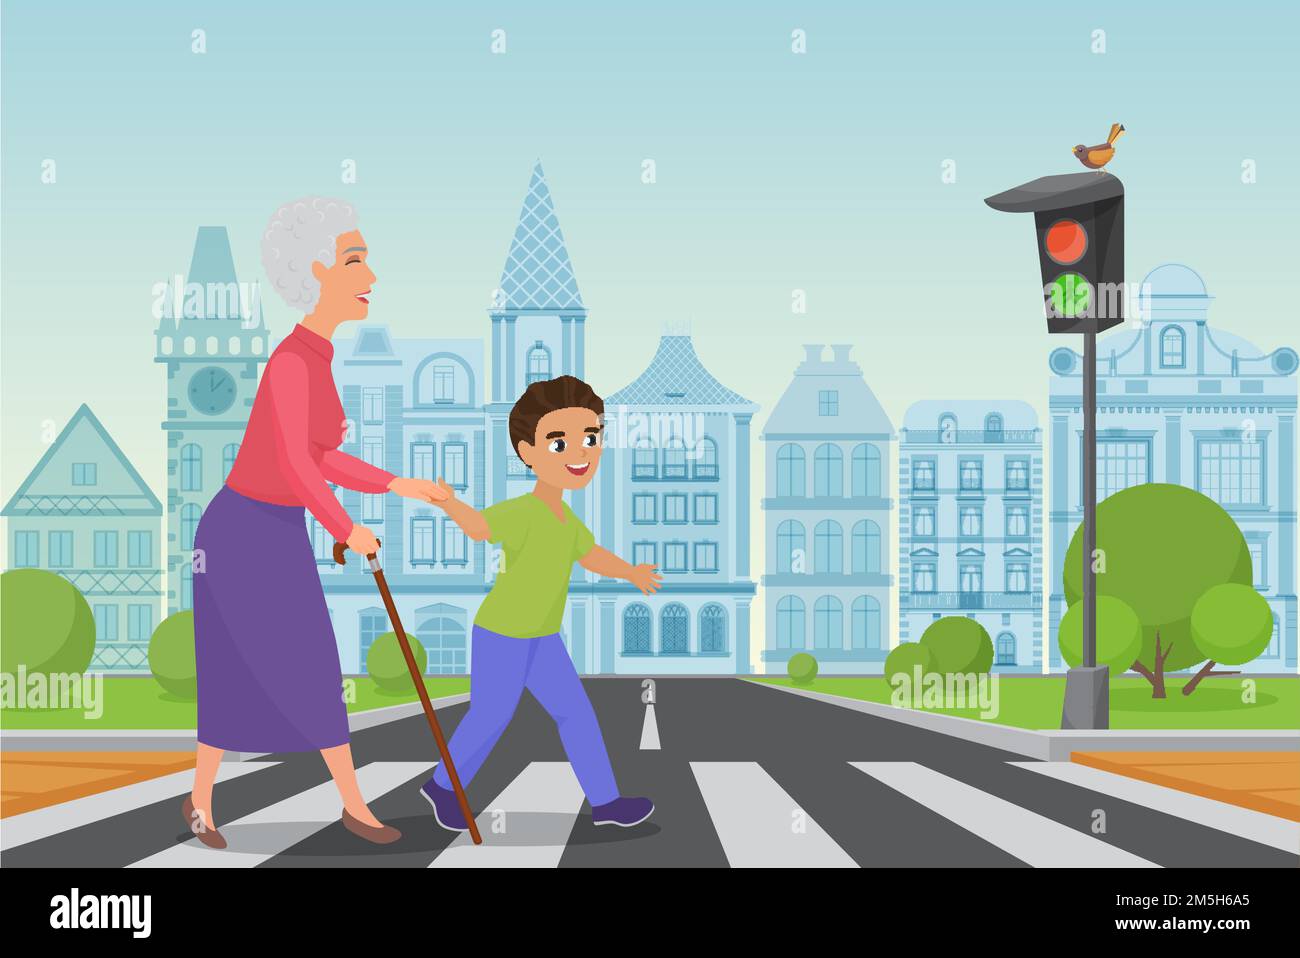 Höflicher kleiner Junge hilft lächelnder alter Frau, die Straße an einer Fußgängerüberfahrt zu passieren, während das grüne Licht leuchtet. Cartoon Vektorgrafik Stock Vektor